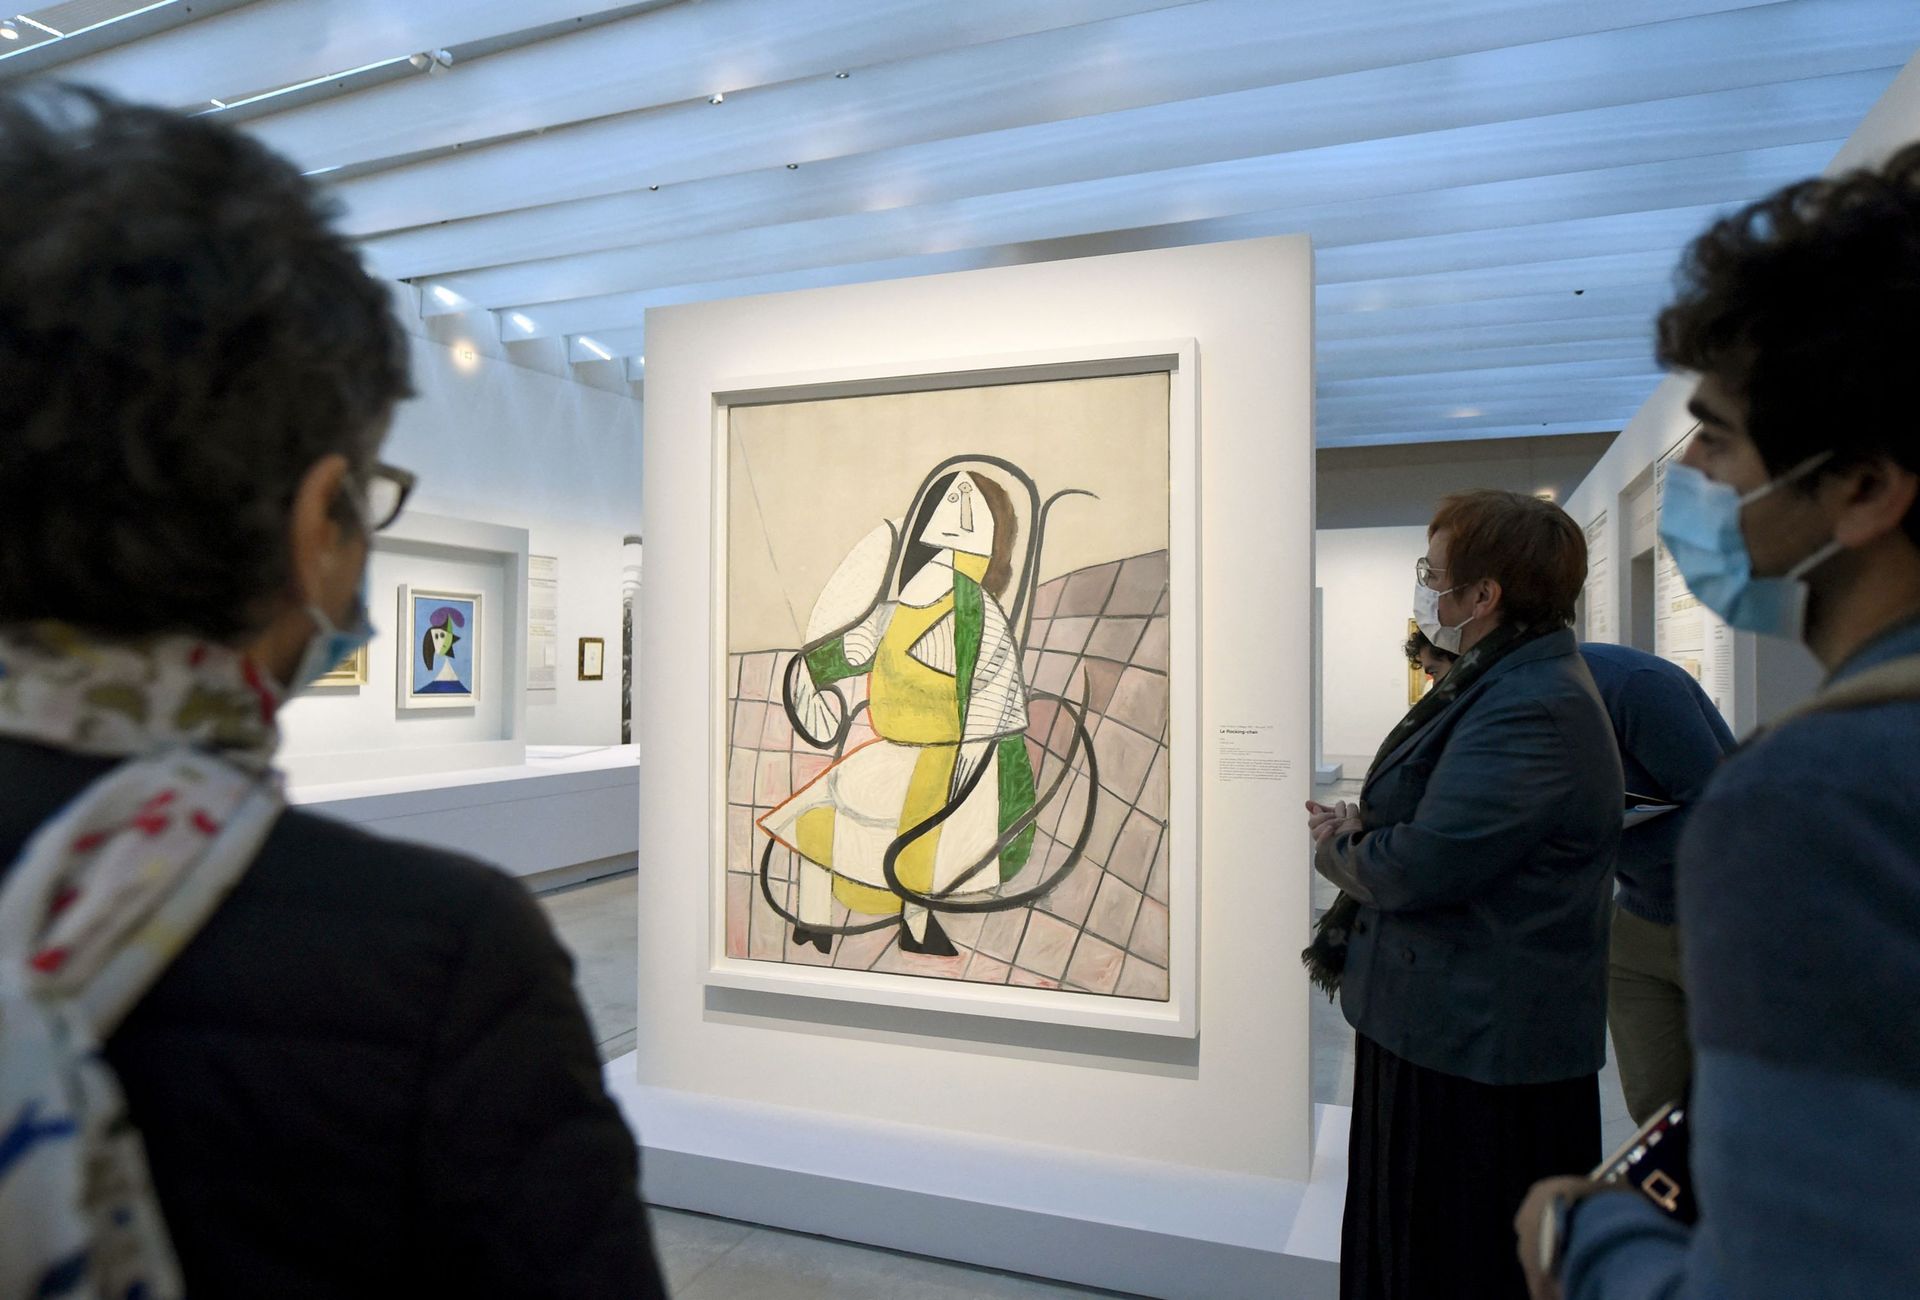 Les Louvre de Pablo Picasso au Louvre-Lens – vue de l’exposition